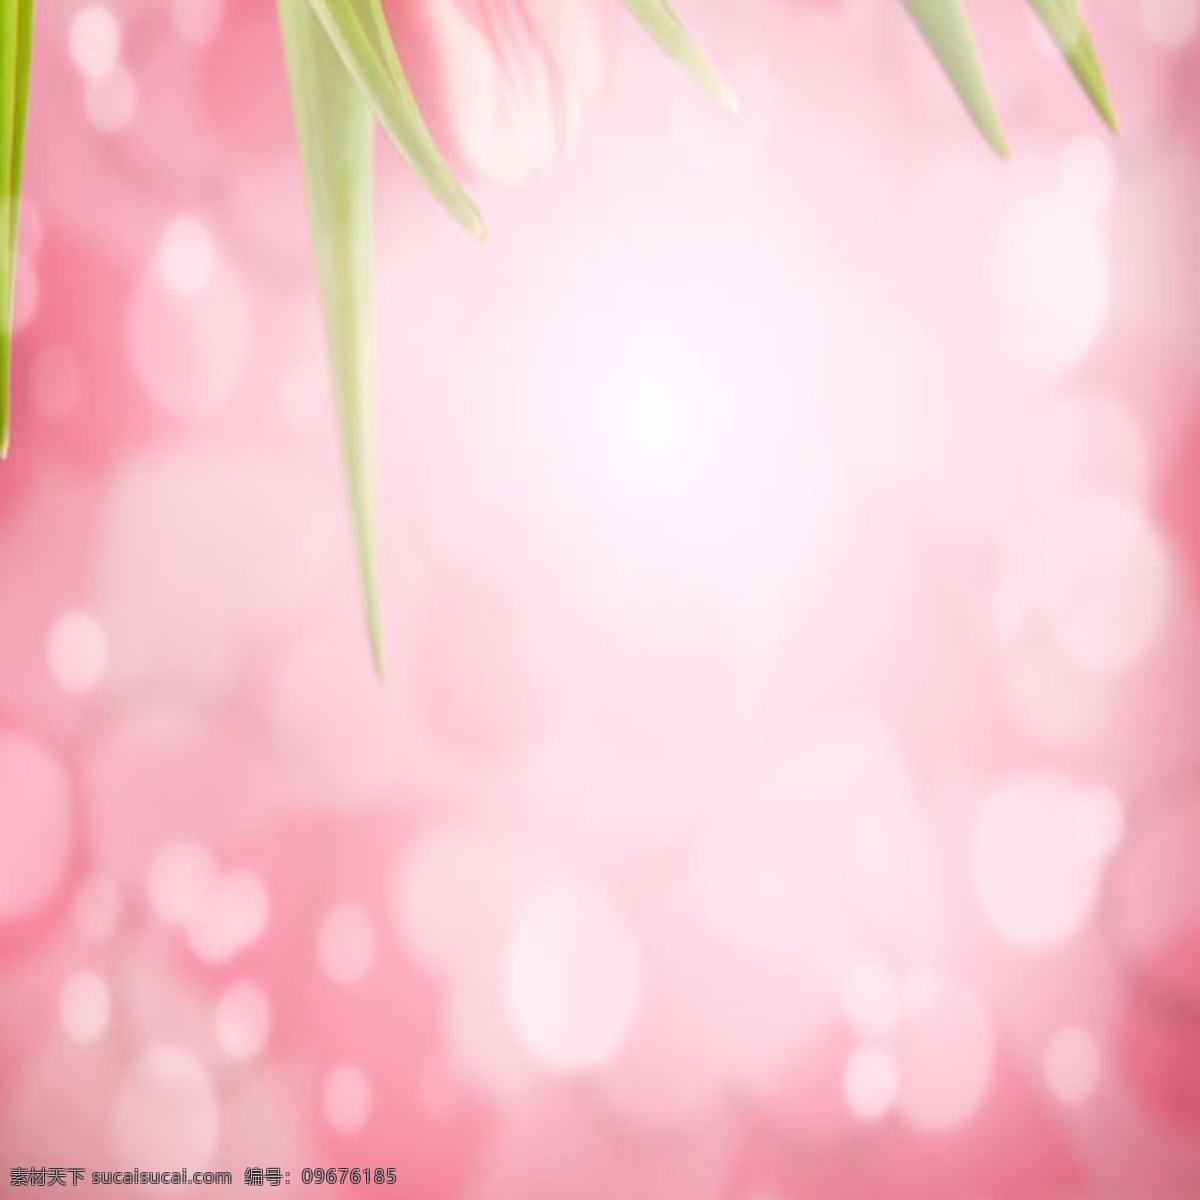 梦幻 唯美 粉色 背景 图 简约 清爽 绿色 花朵 女装 清新 护肤品 玫瑰花